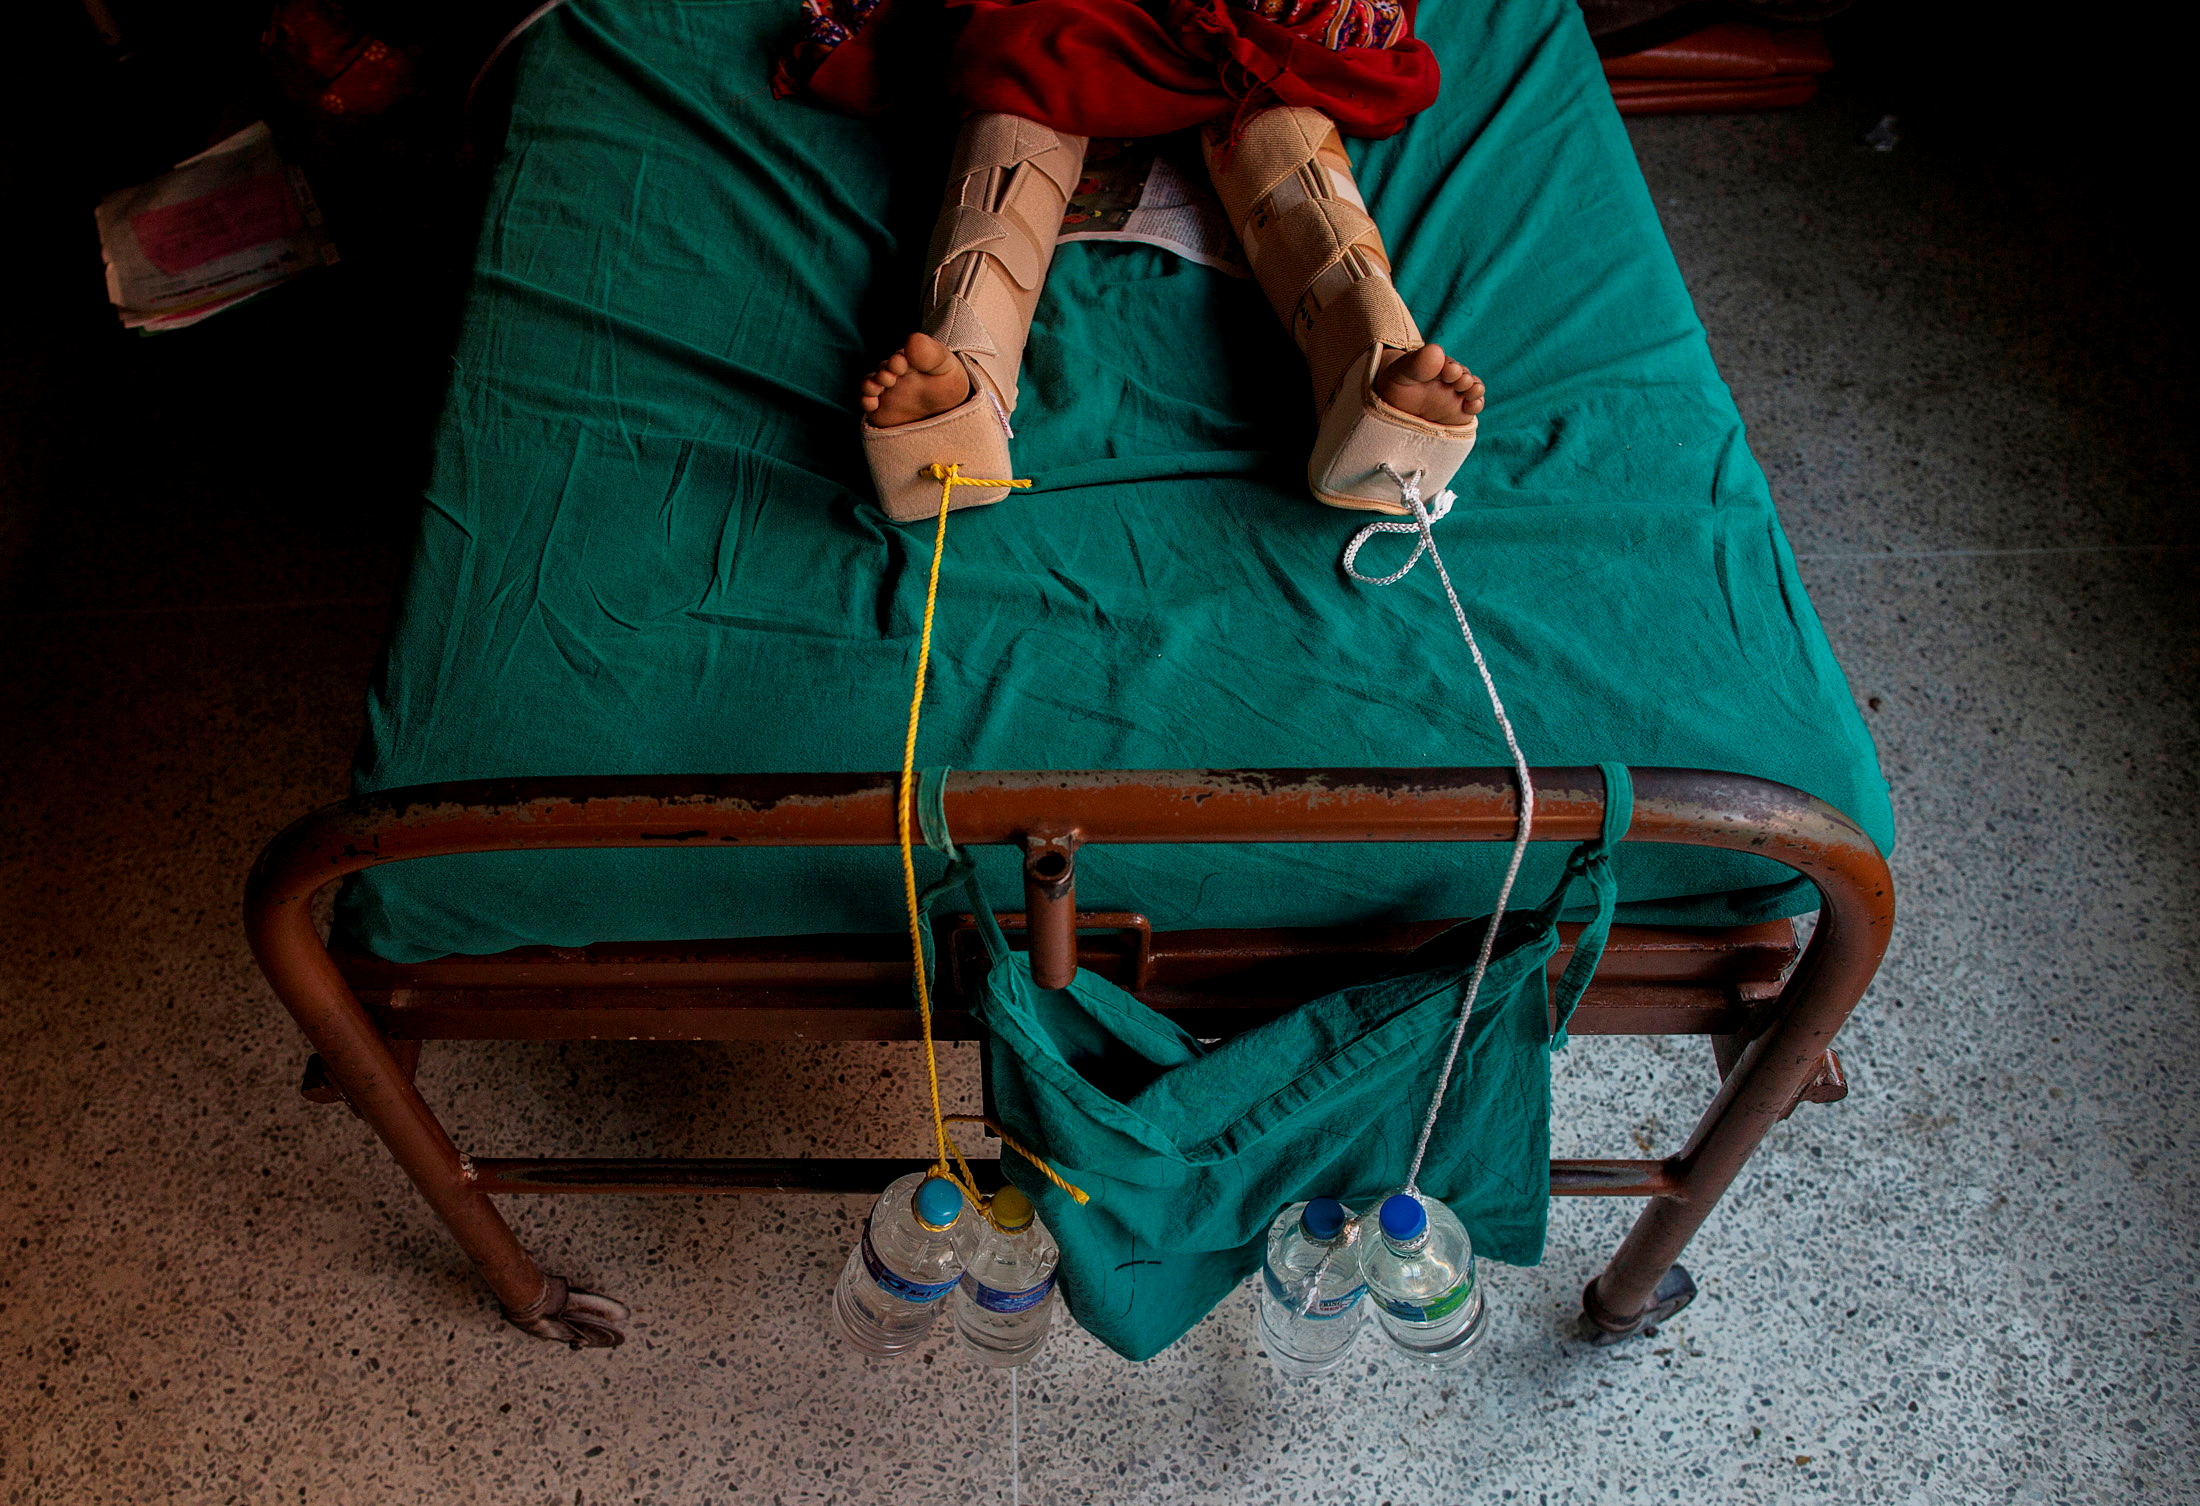 Cuerdas lastradas con botellas de agua se utilizan para aplicar tracción a las piernas de una niña herida tras fracturarse durante un terremoto en un hospital de Katmandú, Nepal, 29 de abril de 2015.